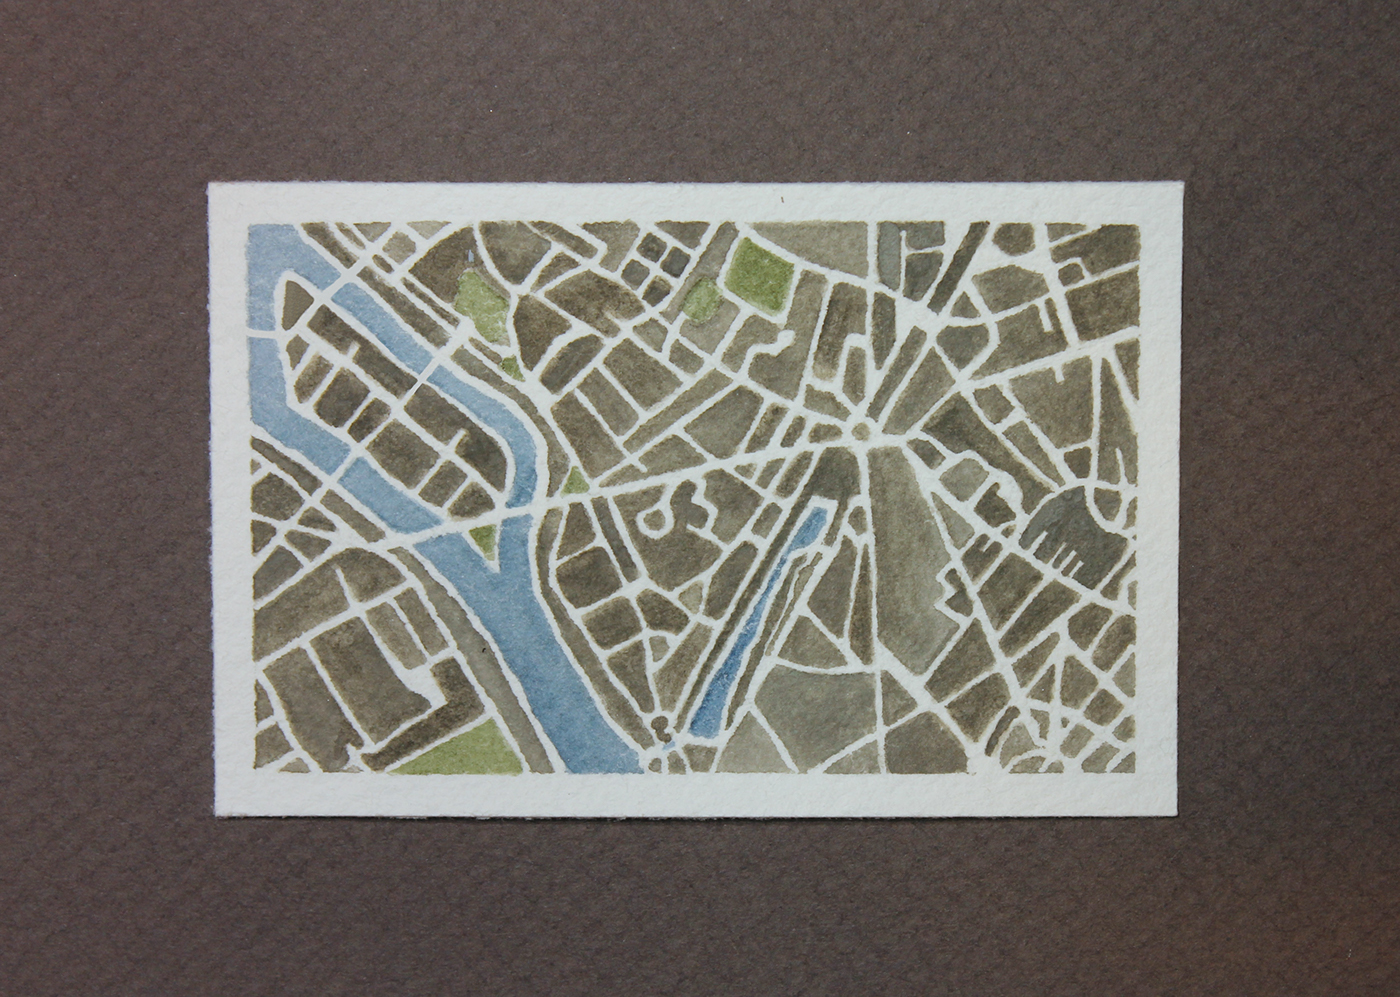 Paris france watercolor map cartography design city art world tourism Travel Street explore downtown paint